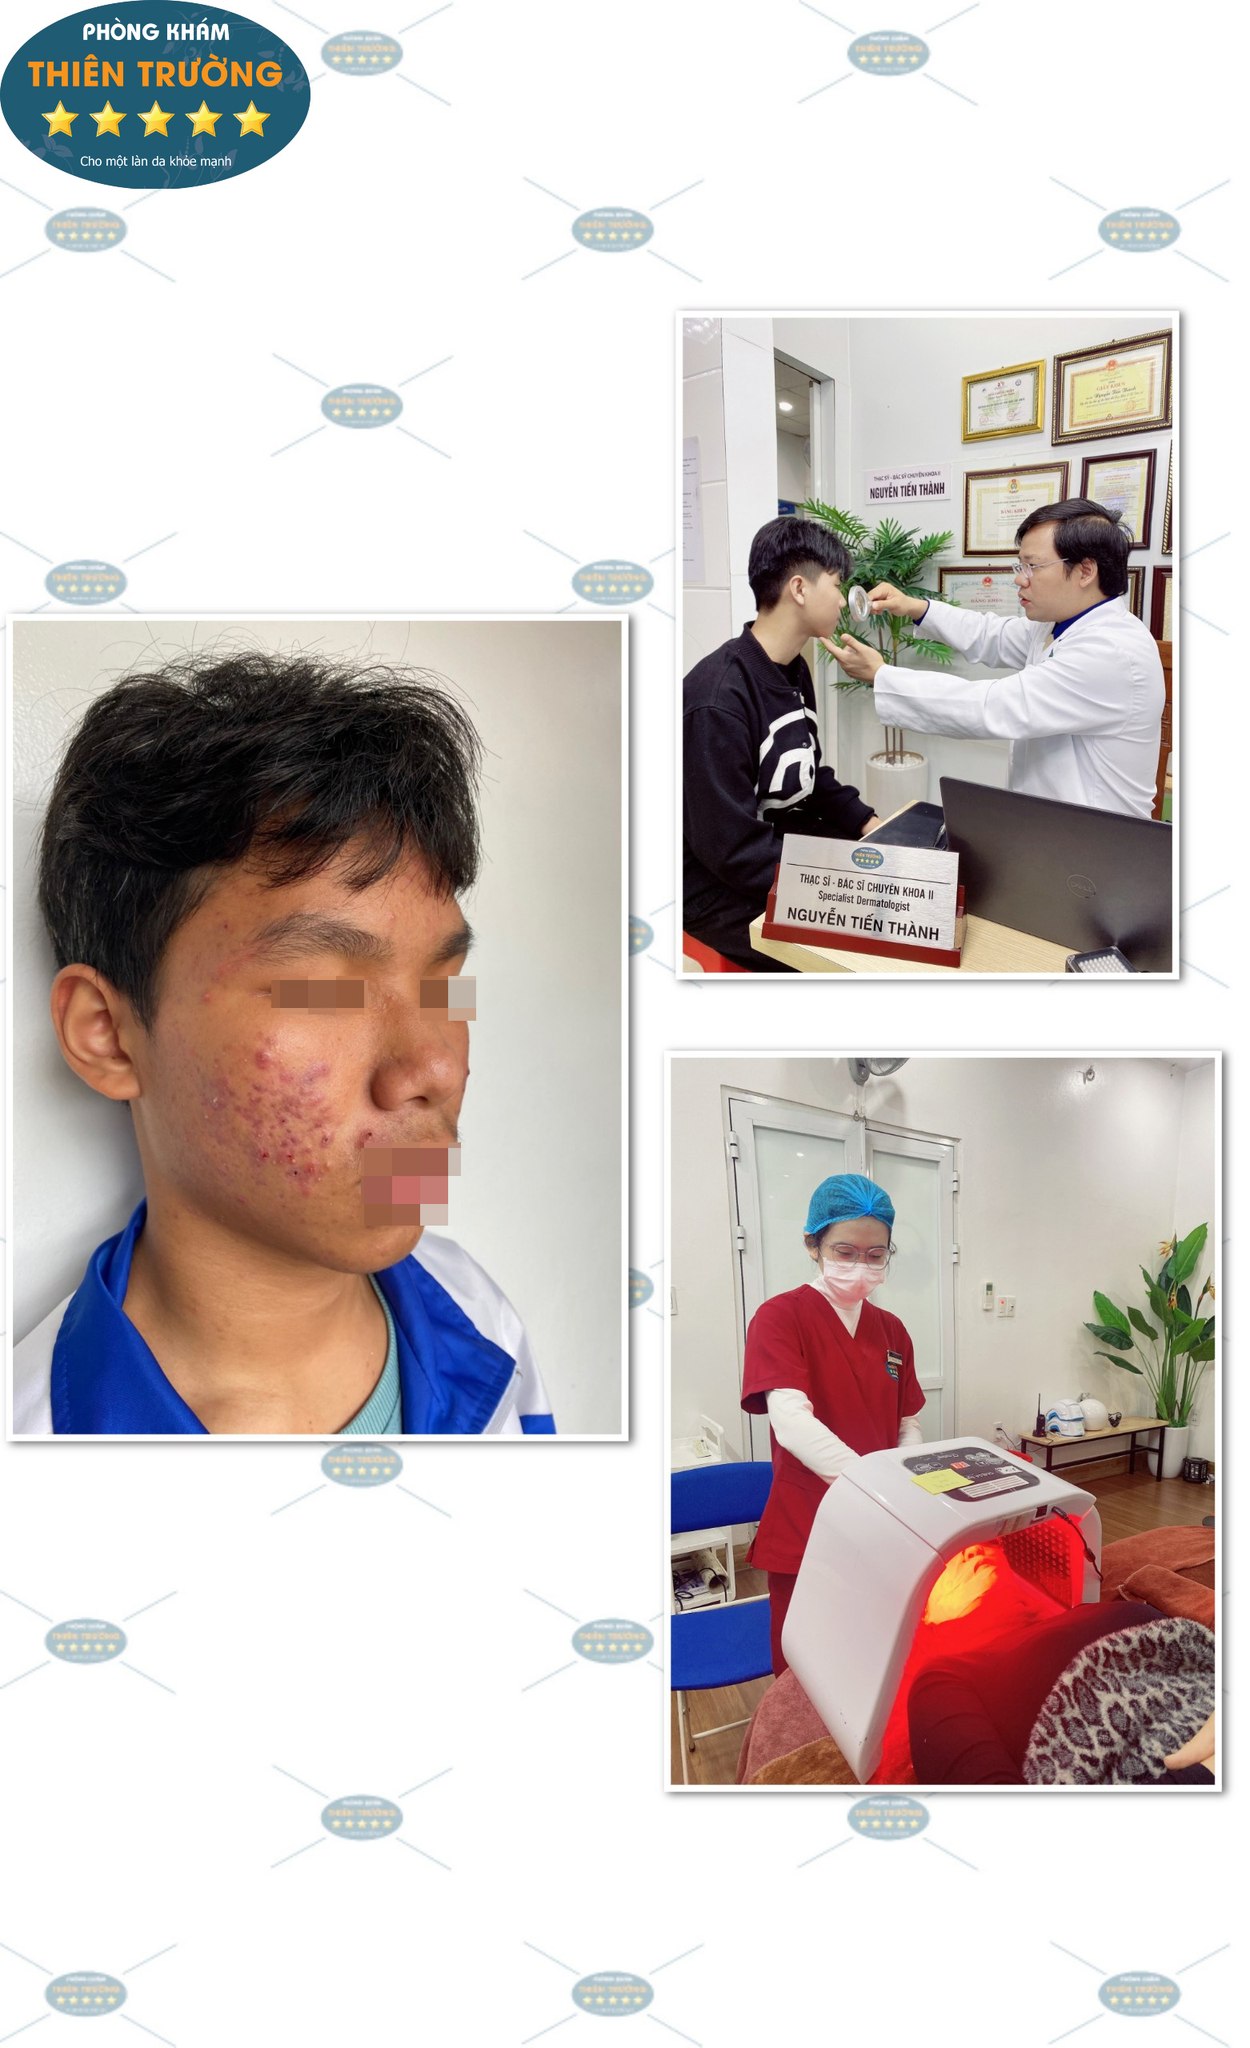 Hình ảnh: Thạc sĩ- Bác sĩ CK II Nguyễn Tiến Thành tại phòng khám Da Liễu thẩm mỹ Thiên Trường